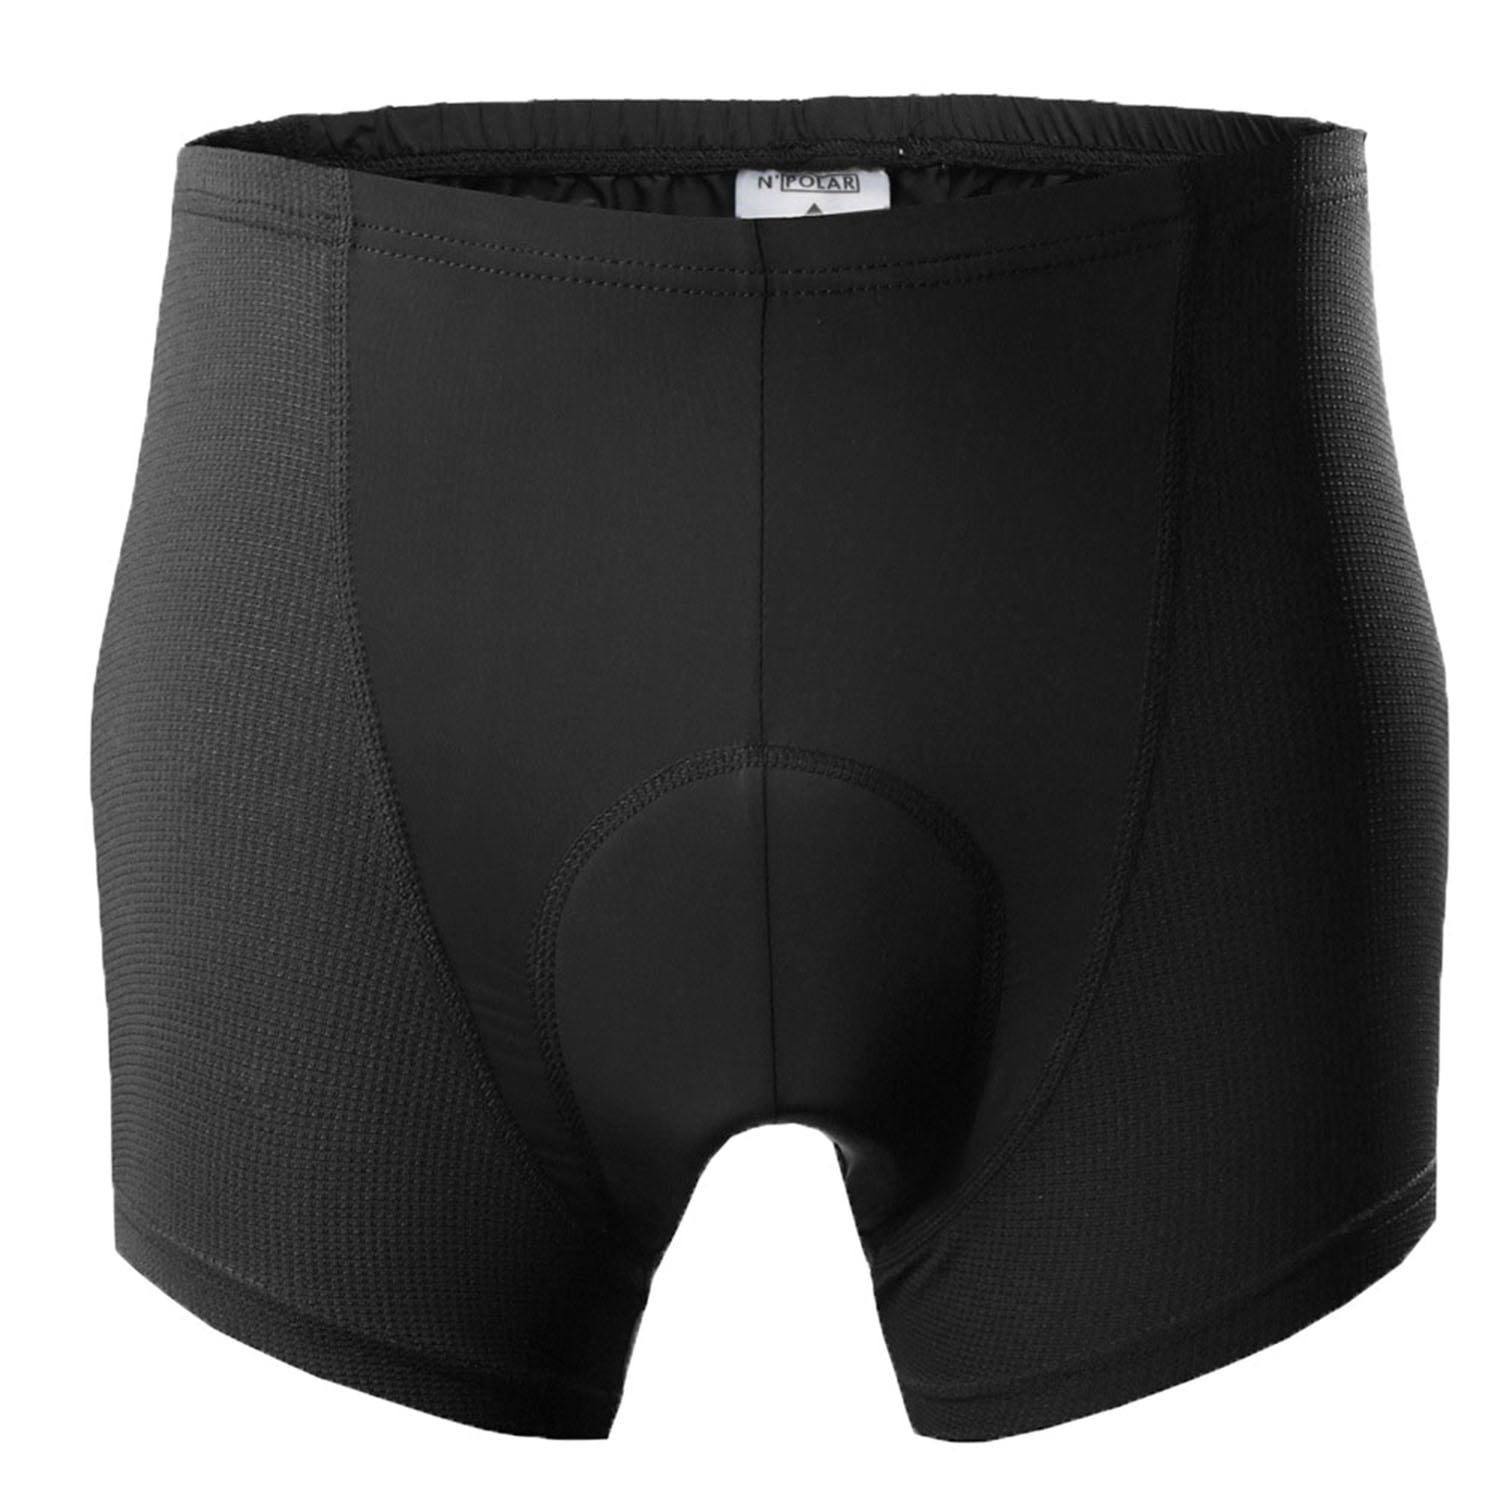 N'Polar 3D Padded Cycling Underwear Shorts - Walmart.com